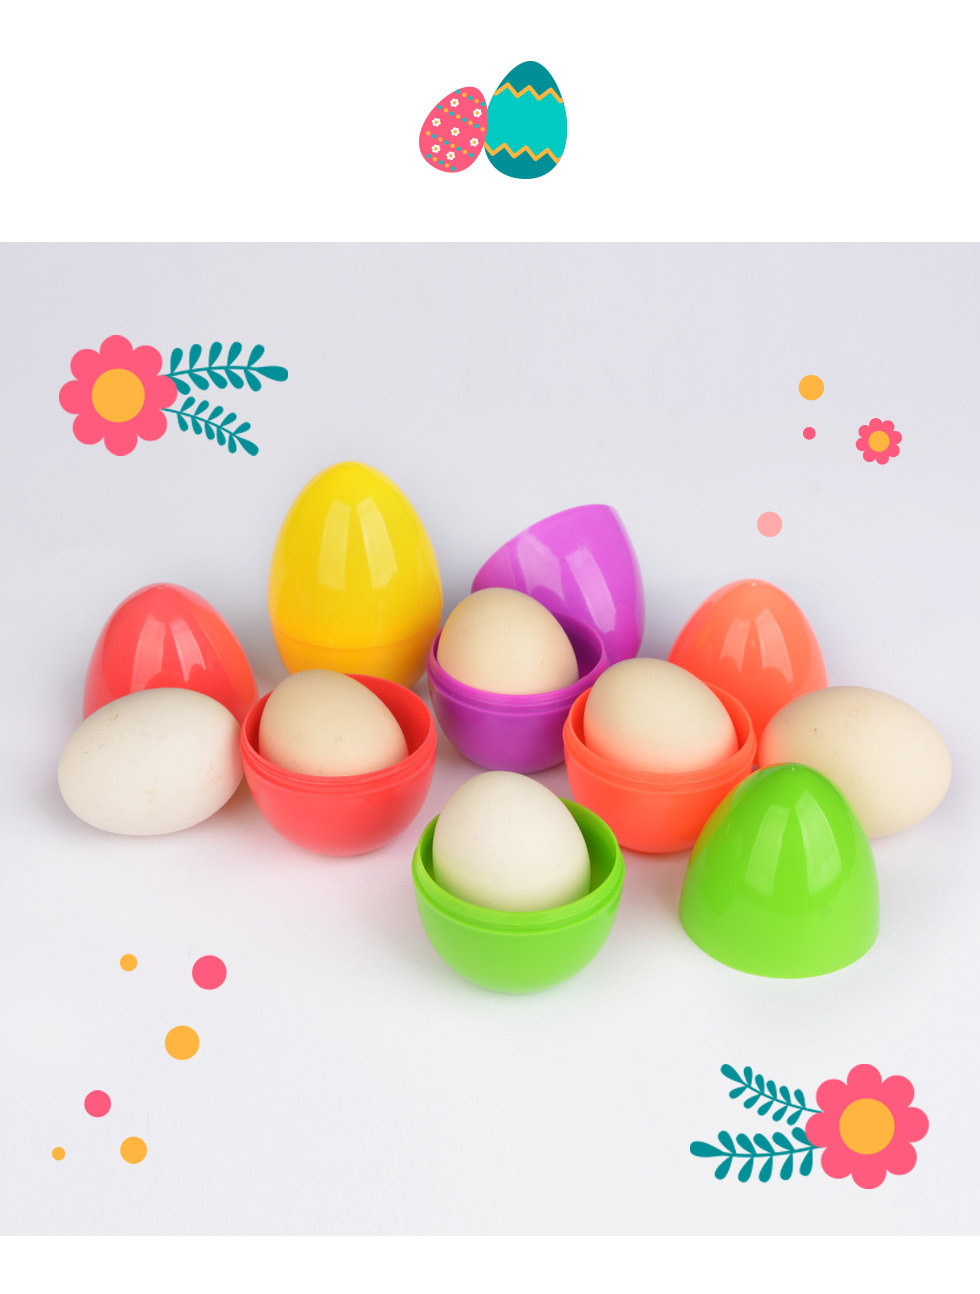 부활절 계란케이스 스탠딩 에그캡슐 (대) 5종에는 계란 한 개가 쏙 들어가 예쁘게 포장됩니다.
